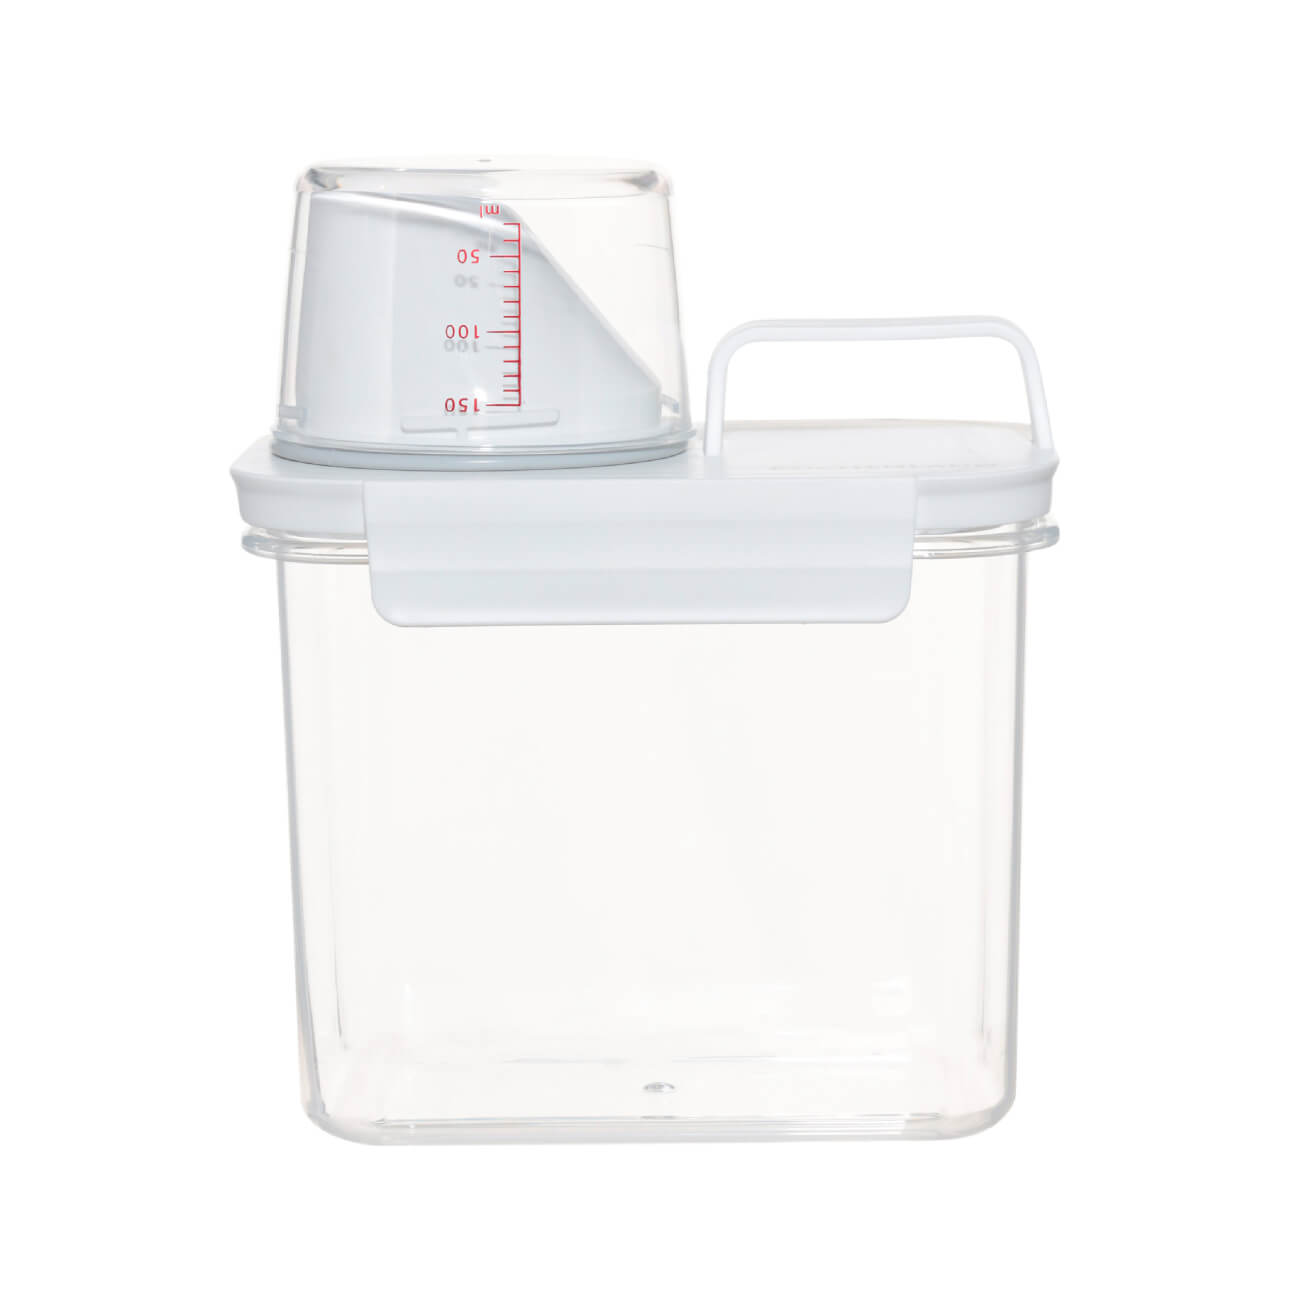 Контейнер для стирального порошка или геля, 1,1 л, с мерником, пластик, белый, Compact контейнер для содержания мелких животных